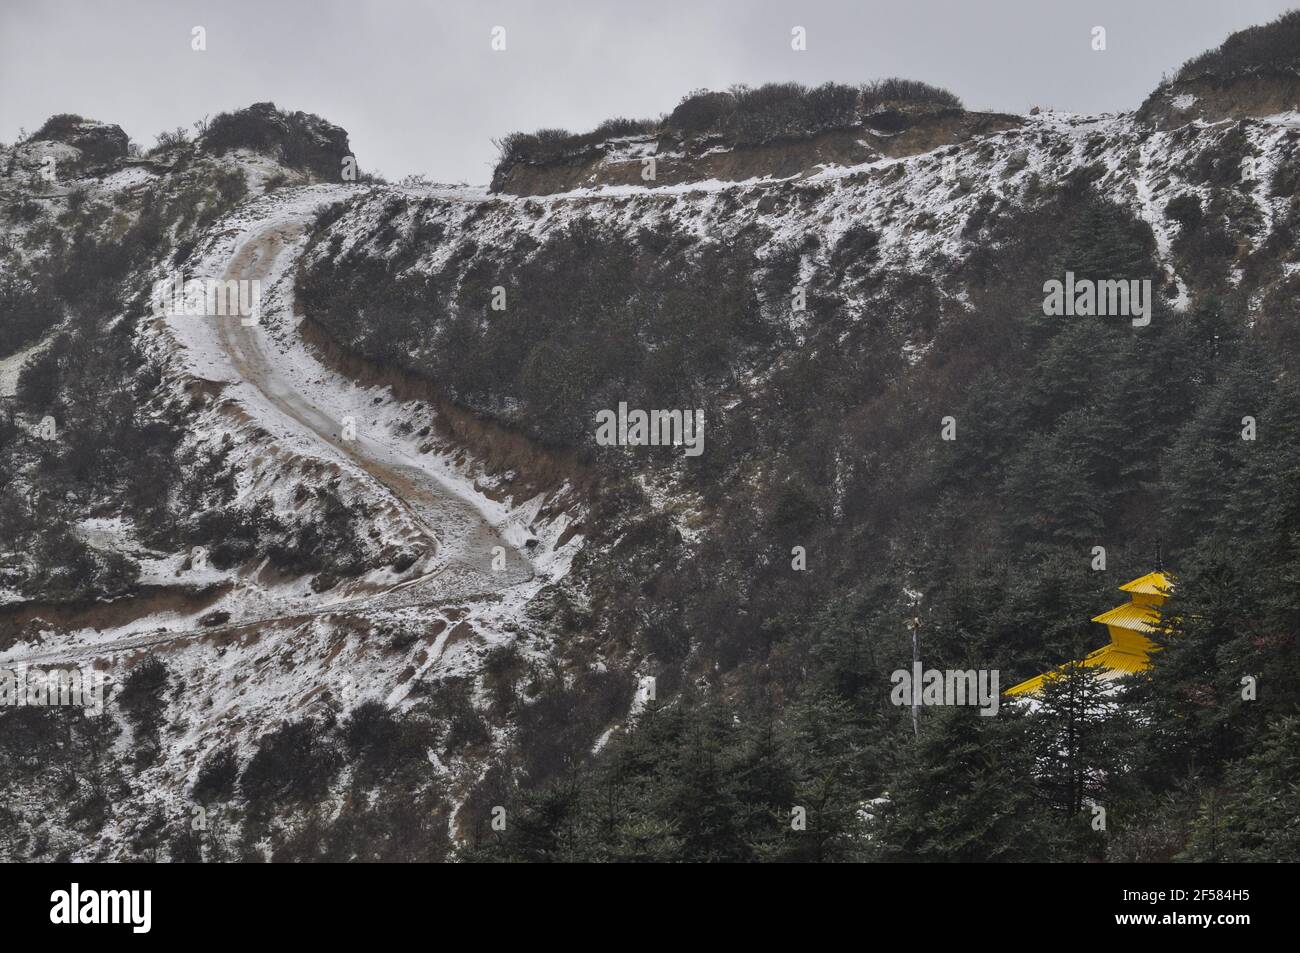 Templo nepalí con techo amarillo en la cima de la colina, camino en espiral cubierto de nieve, camino que conduce al templo Foto de stock